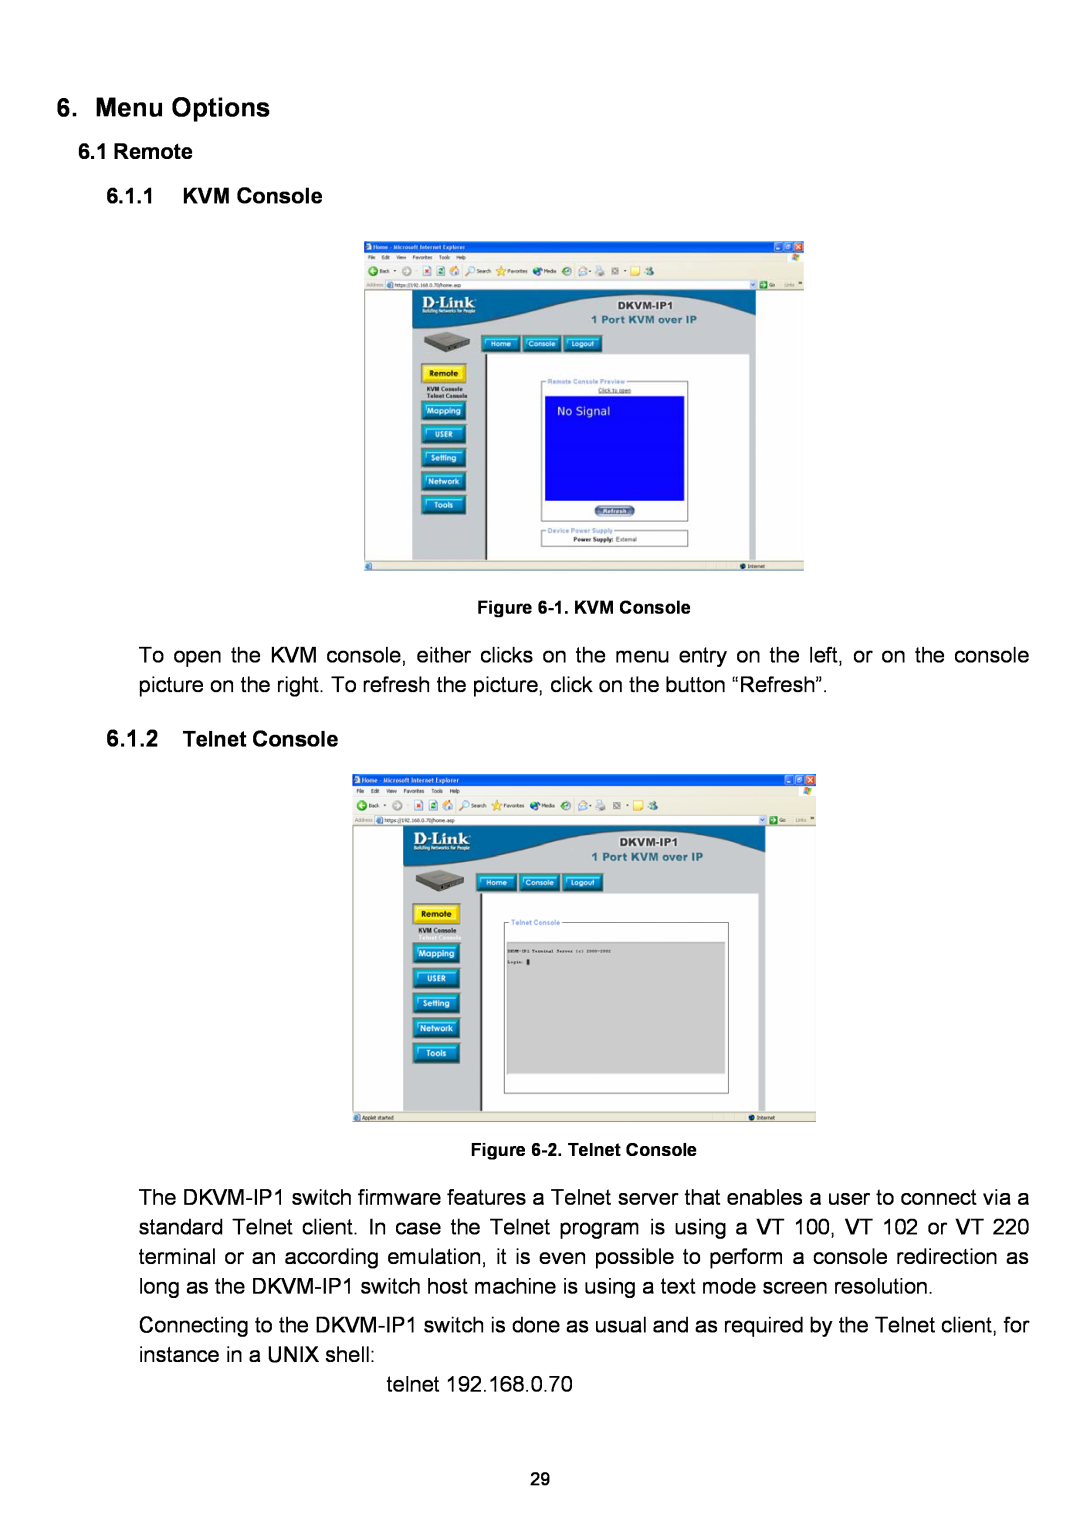 D-Link DKVM-IP1 manual Menu Options, Remote 6.1.1 KVM Console, Telnet Console 